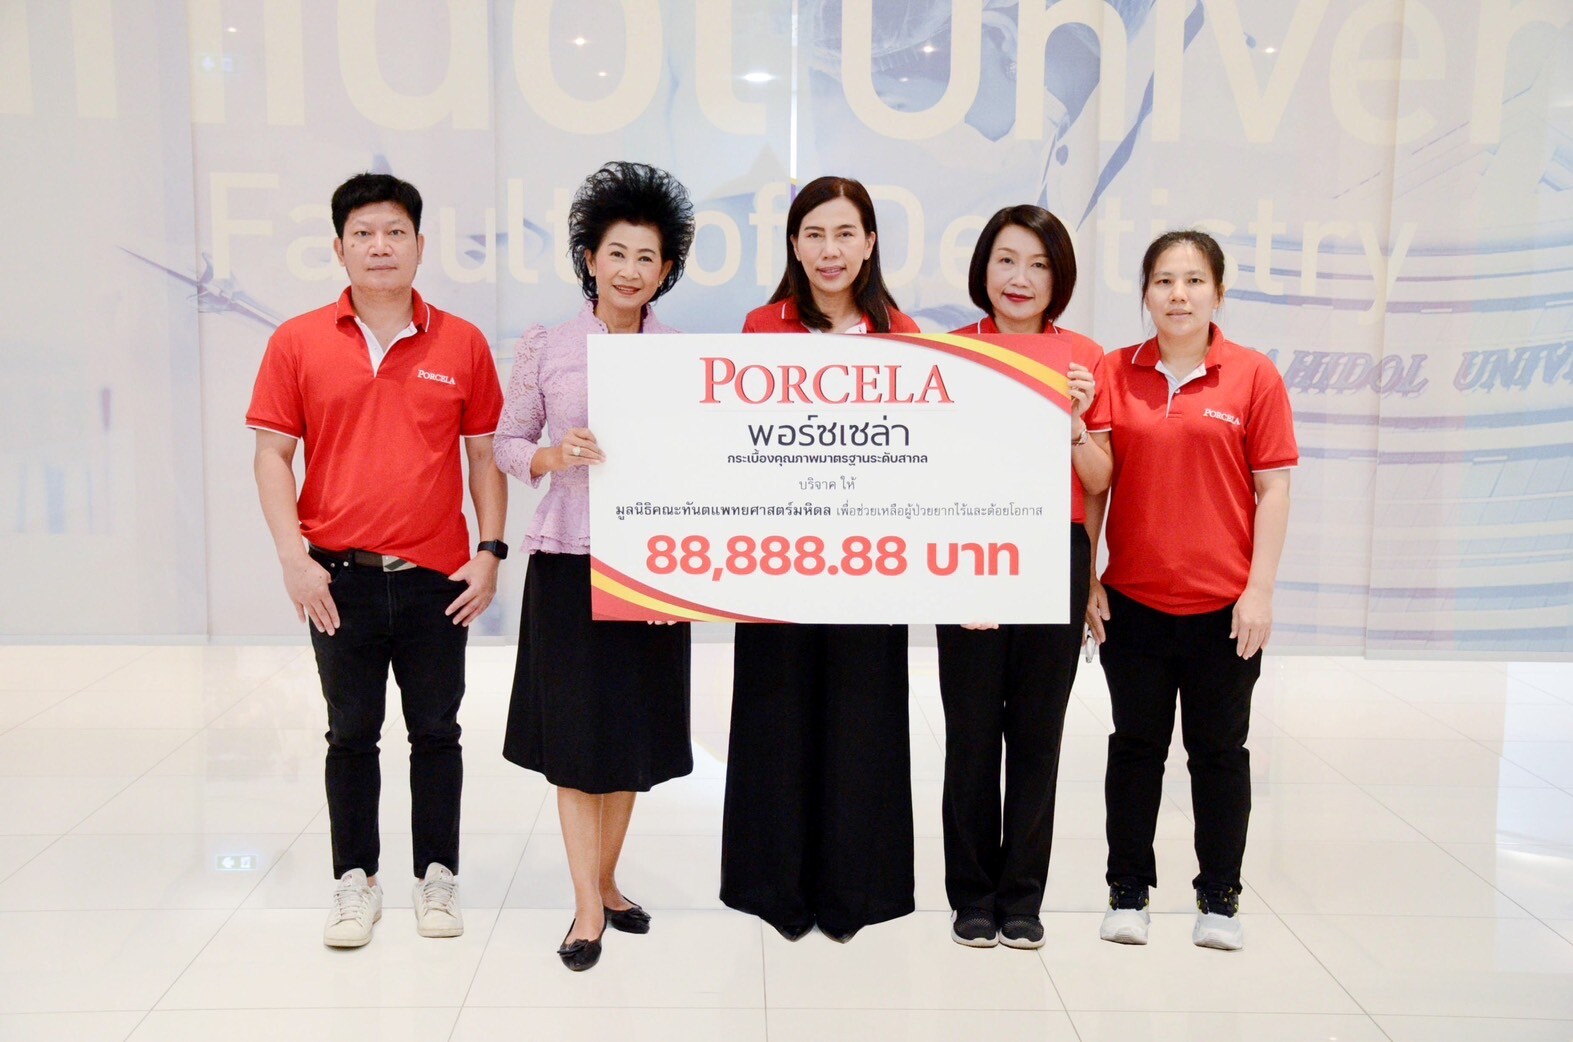 พอร์ซเซล่า (PORCELA) มอบเงินบริจาค ให้ศูนย์สิริกิติ์บรมราชินีนาถ (มะเร็งเต้านม) โรงพยาบาลจุฬาลงกรณ์ "สภากาชาดไทย"และมูลนิธิคณะทันตแพทยศาสตร์มหิดล